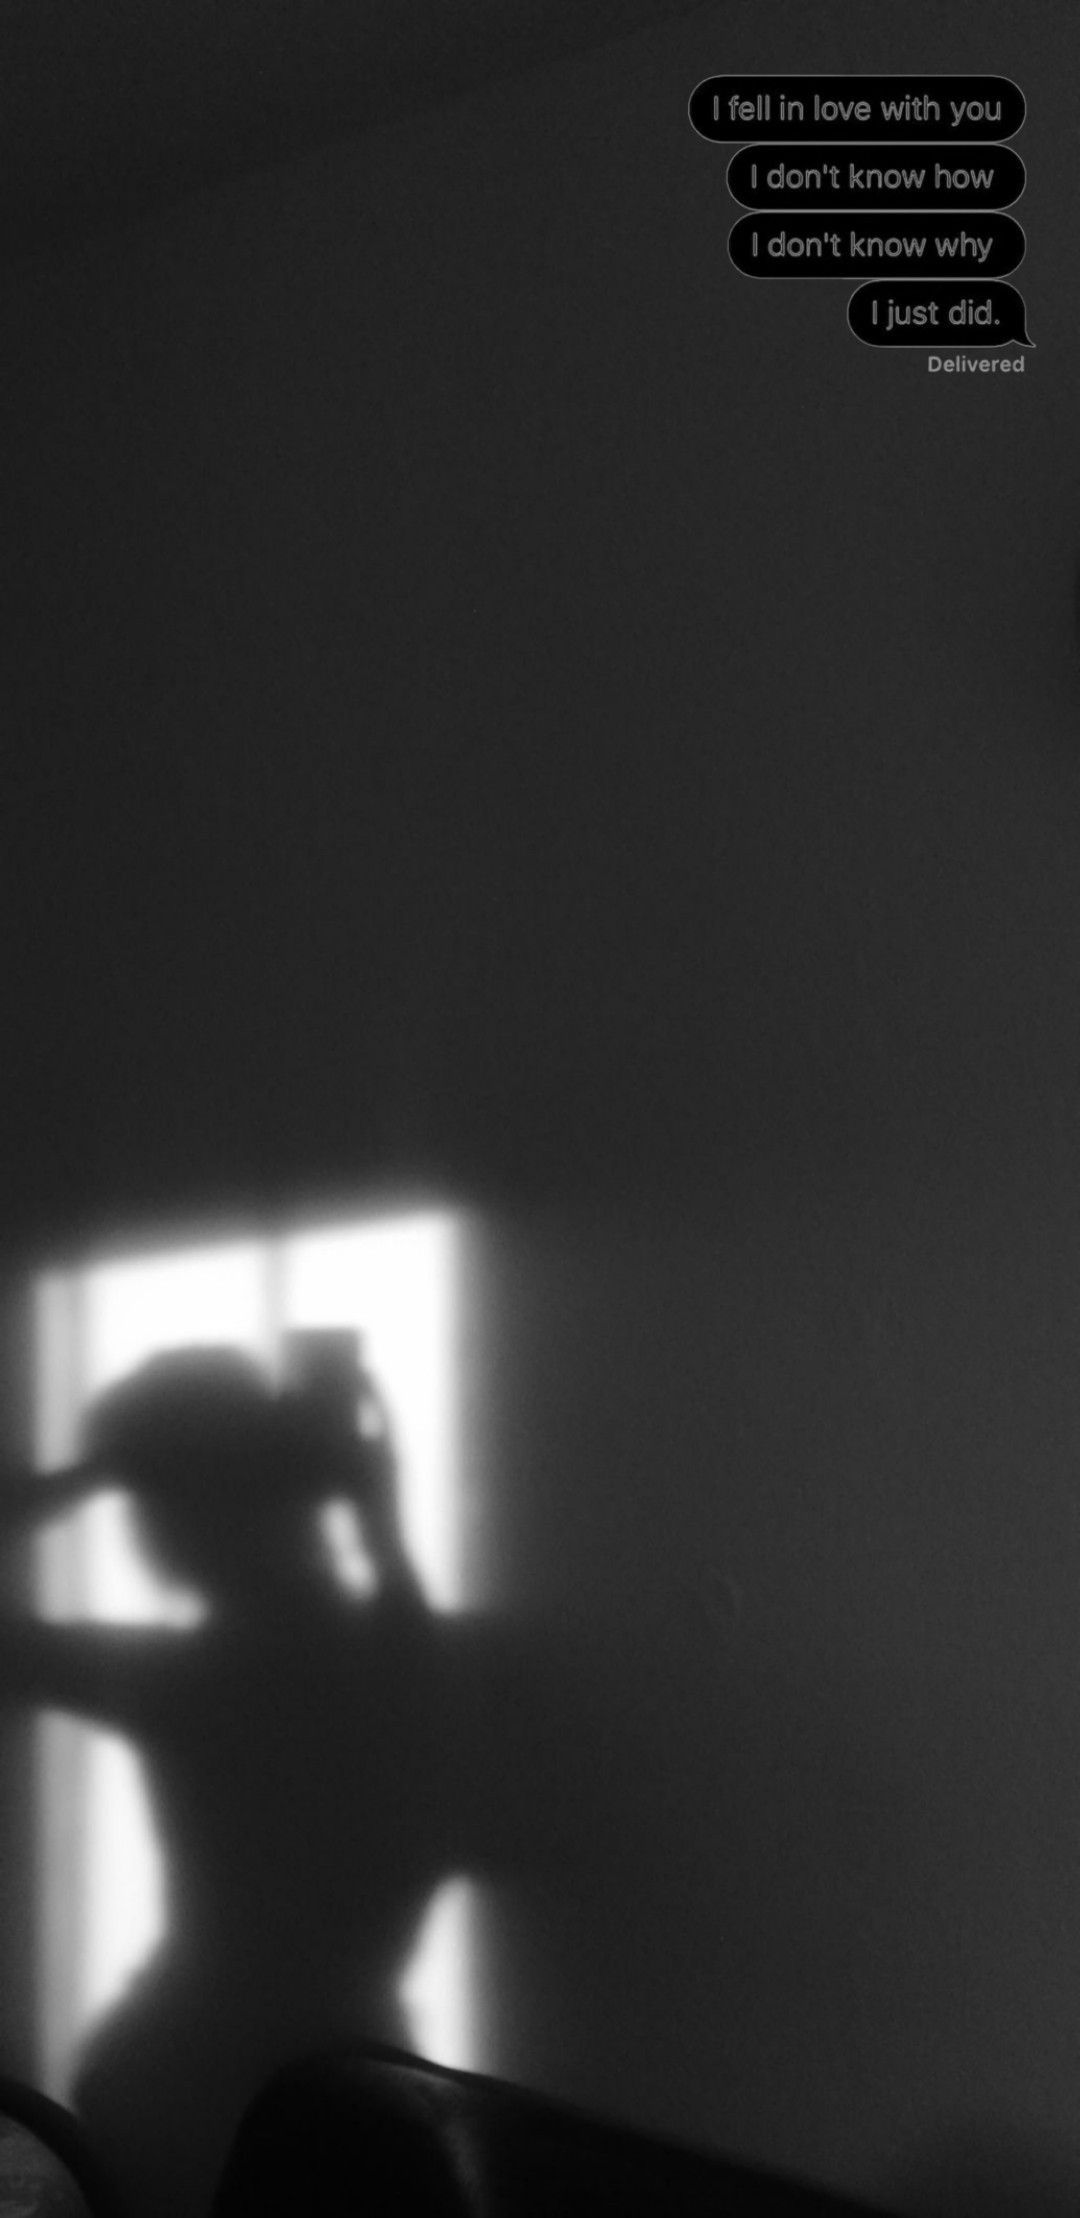 Einsam Hintergrundbild 1080x2218. Wallpaper black and white. Black and white photo wall, Black and white wallpaper iphone, Black and white background